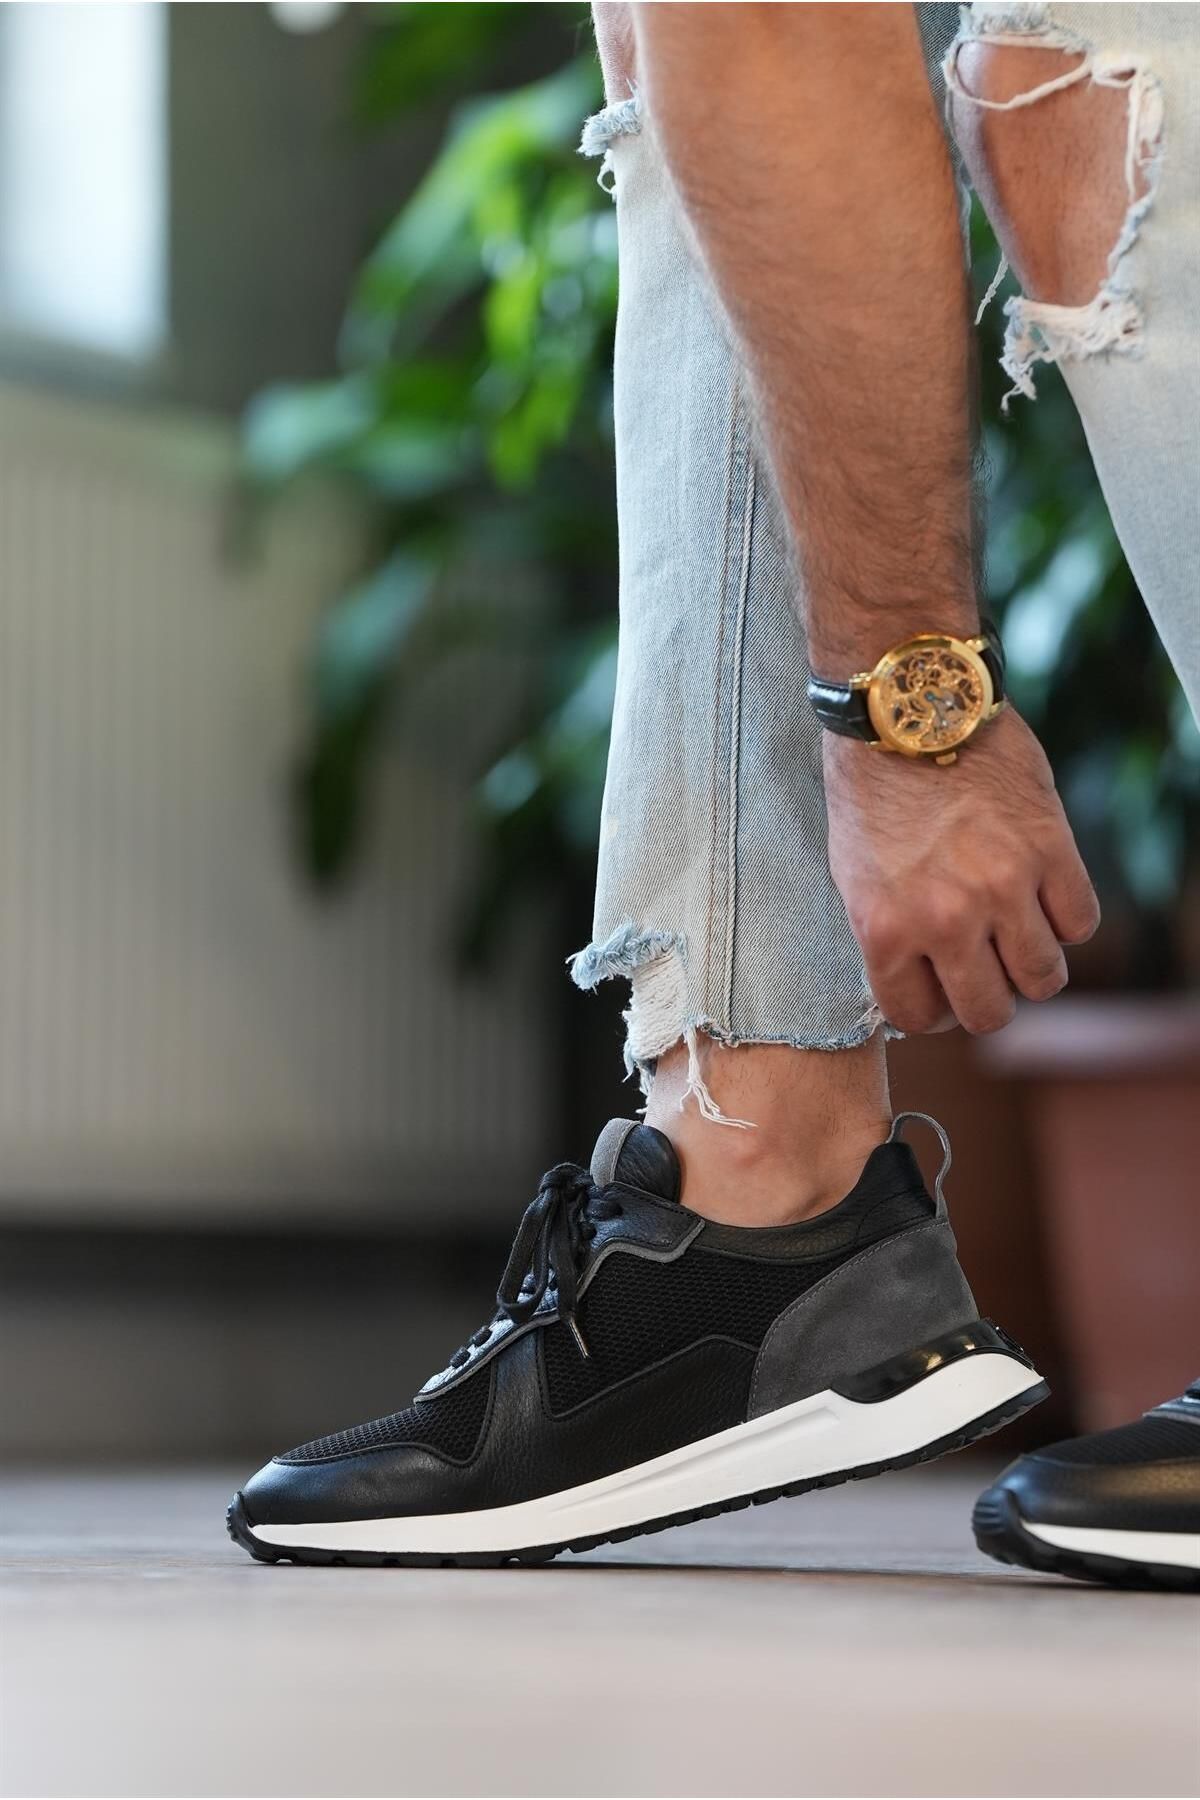 Tetri Albus Model Hakiki Deri Erkek Siyah Günlük Sneaker Ayakkabı - Erkek Siyah Spor Ayakkabı